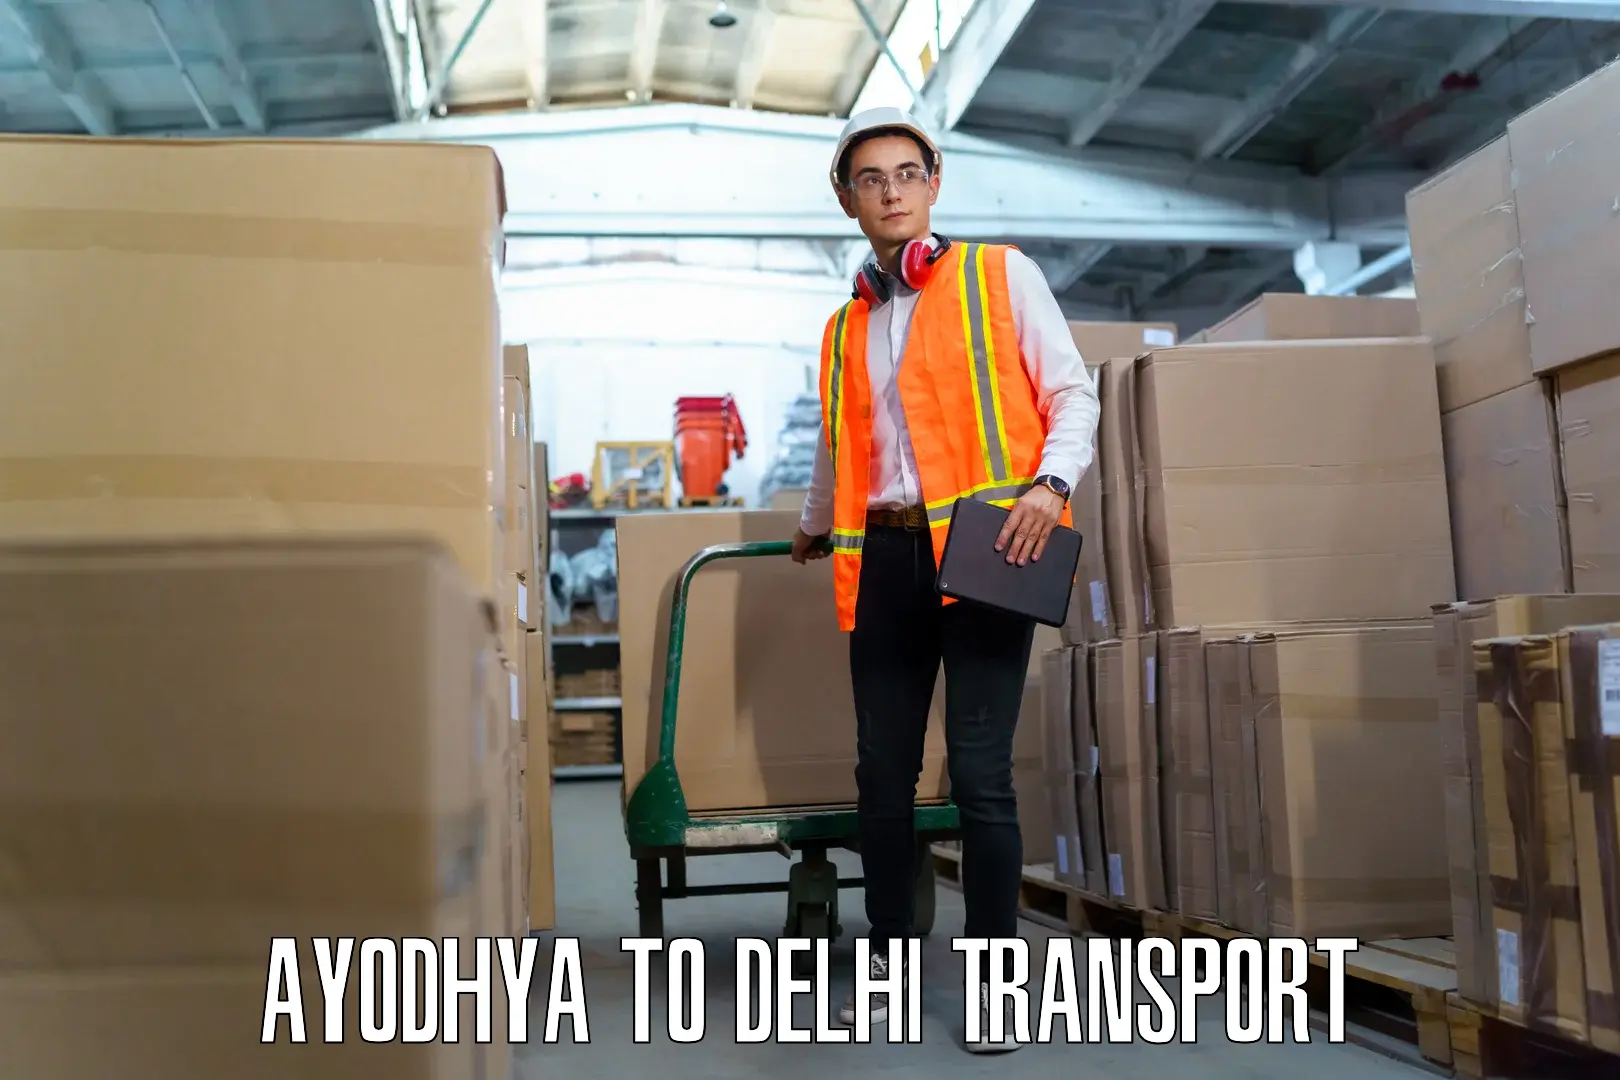 Nearest transport service in Ayodhya to Jhilmil